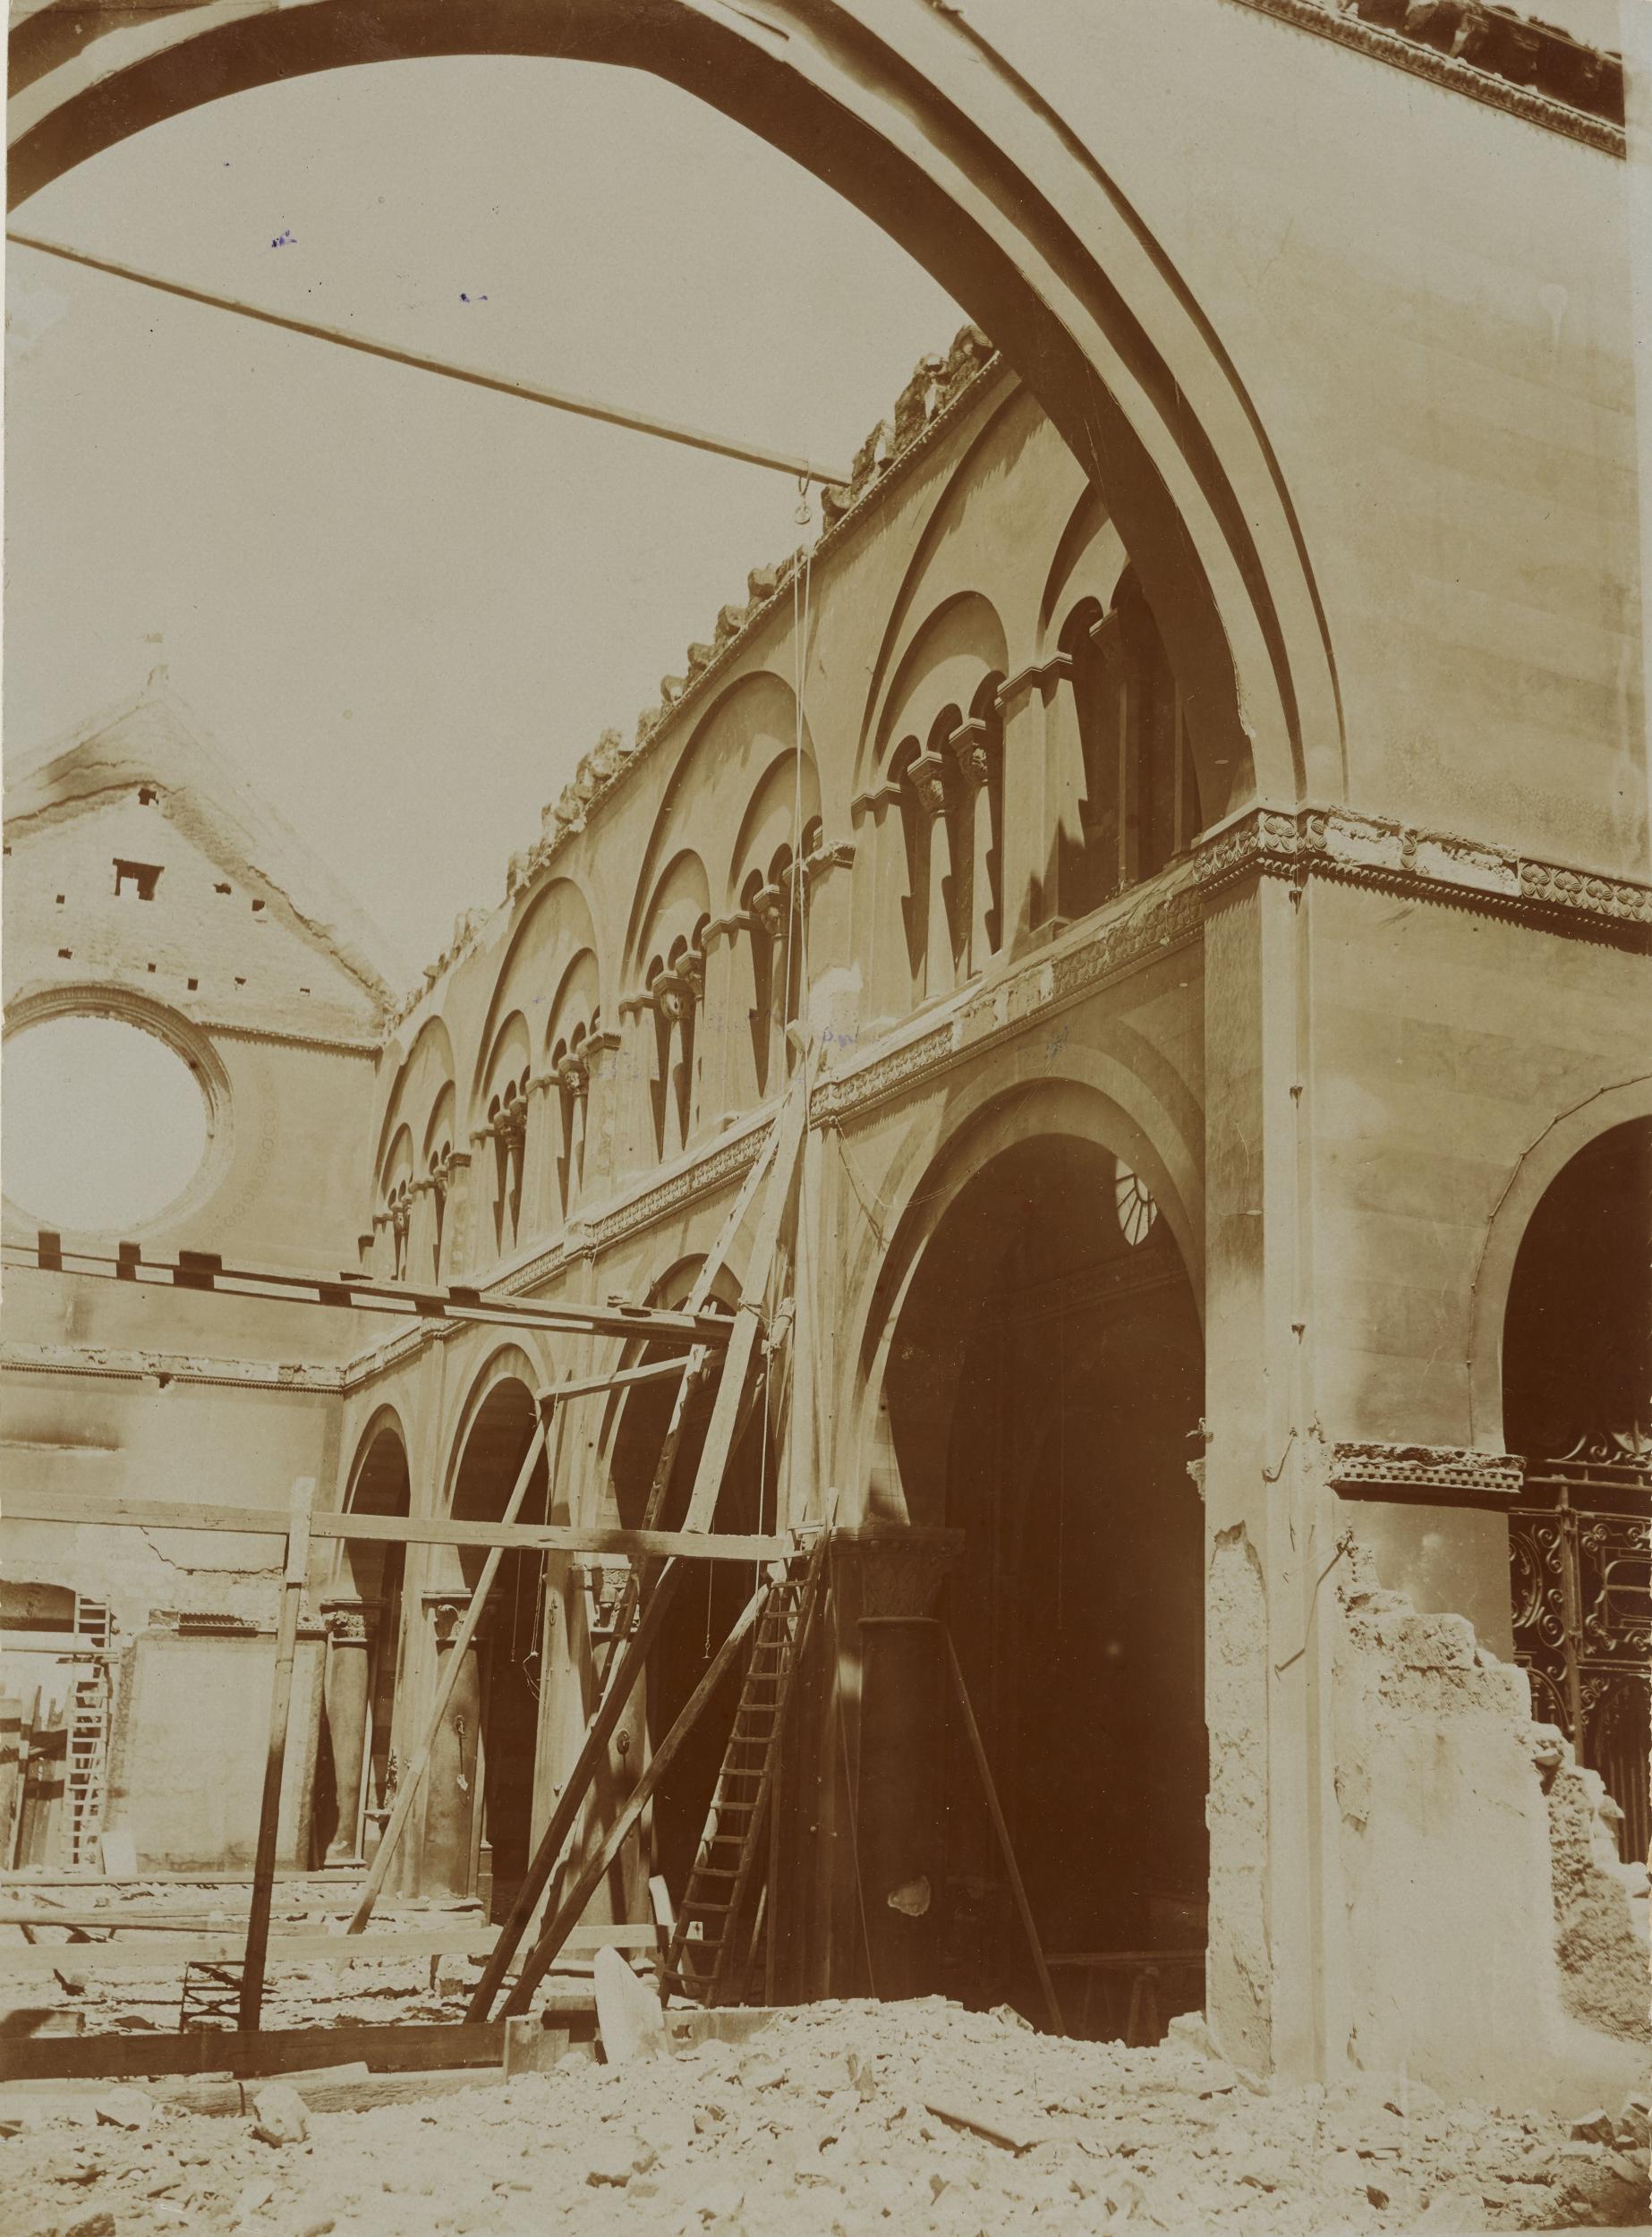 Fotografo non identificato, Conversano - Cattedrale, interno, navata destra, dopo incendio del 1911, 1901-1910, aristotipo, MPI155338